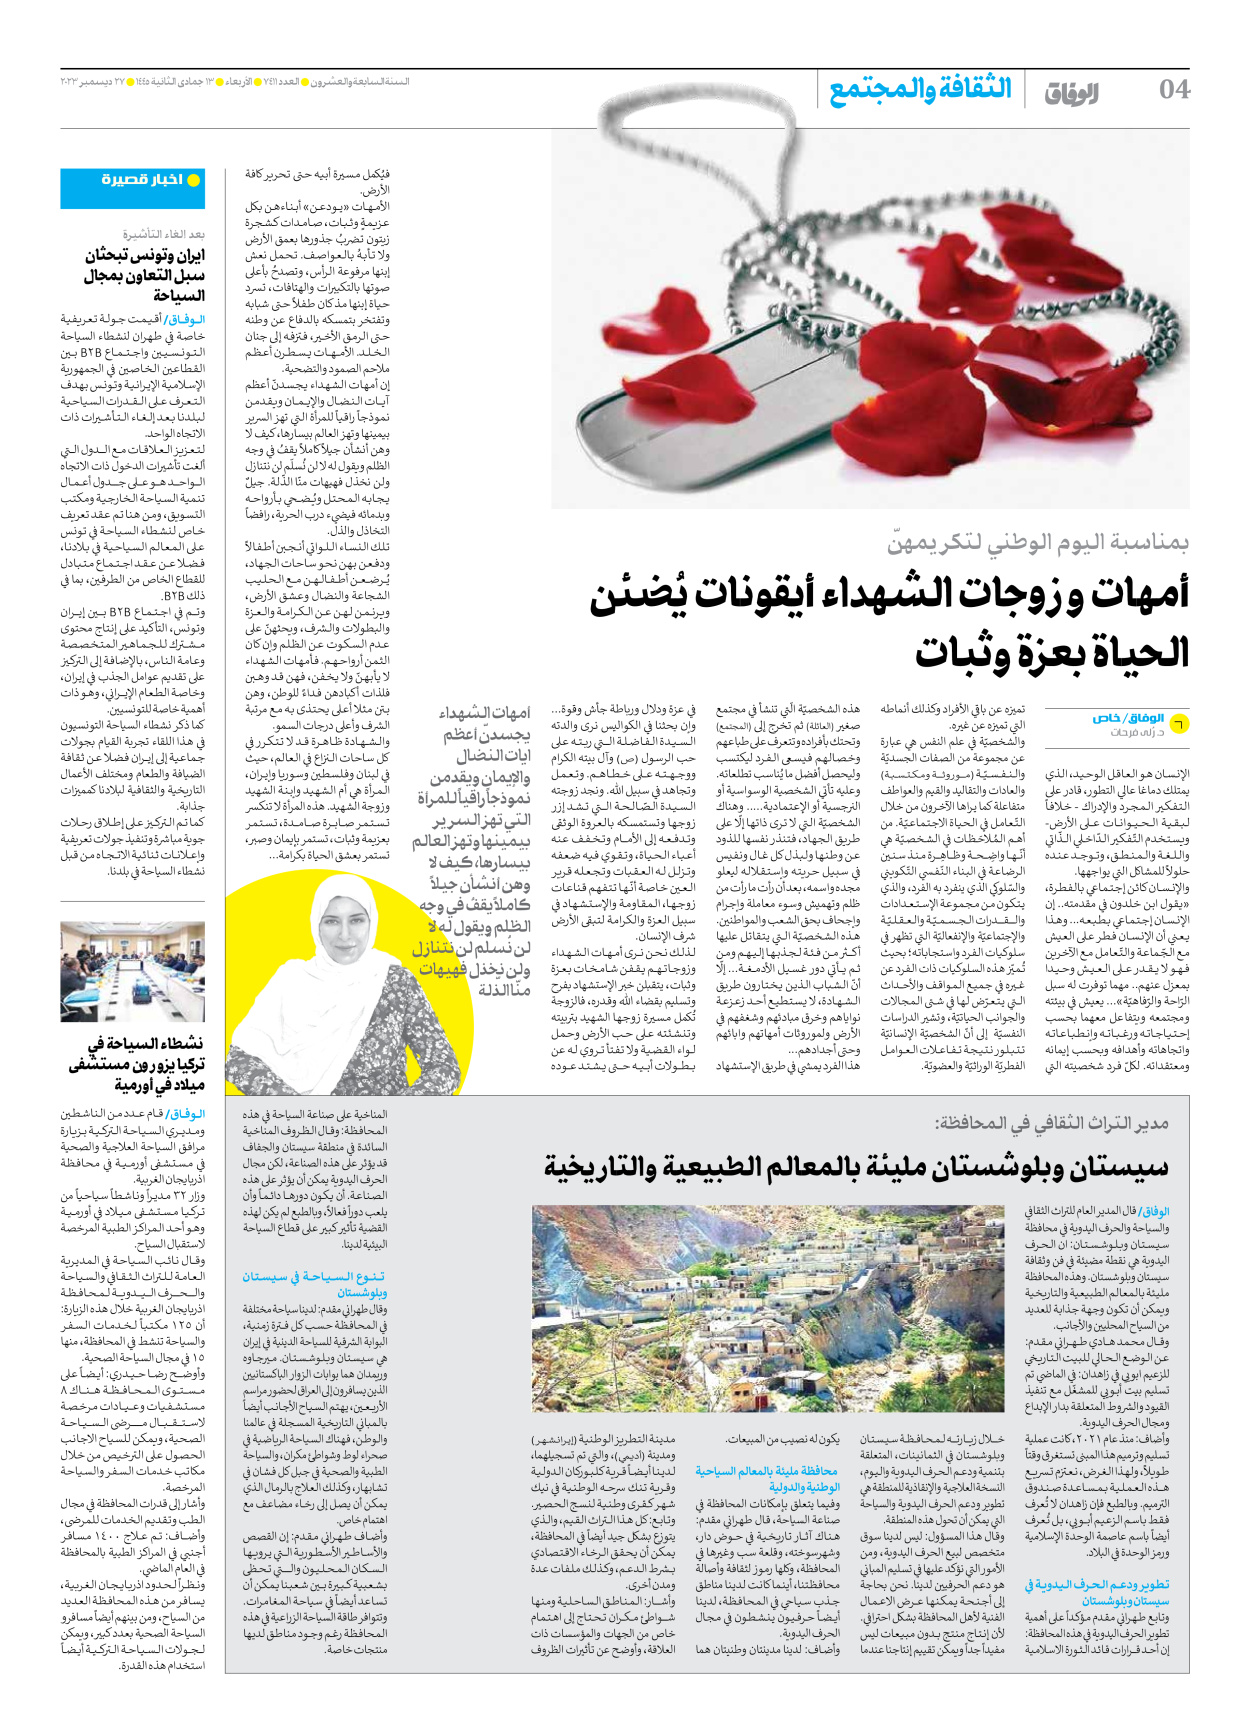 صحیفة ایران الدولیة الوفاق - العدد سبعة آلاف وأربعمائة وأحد عشر - ٢٧ ديسمبر ٢٠٢٣ - الصفحة ٤